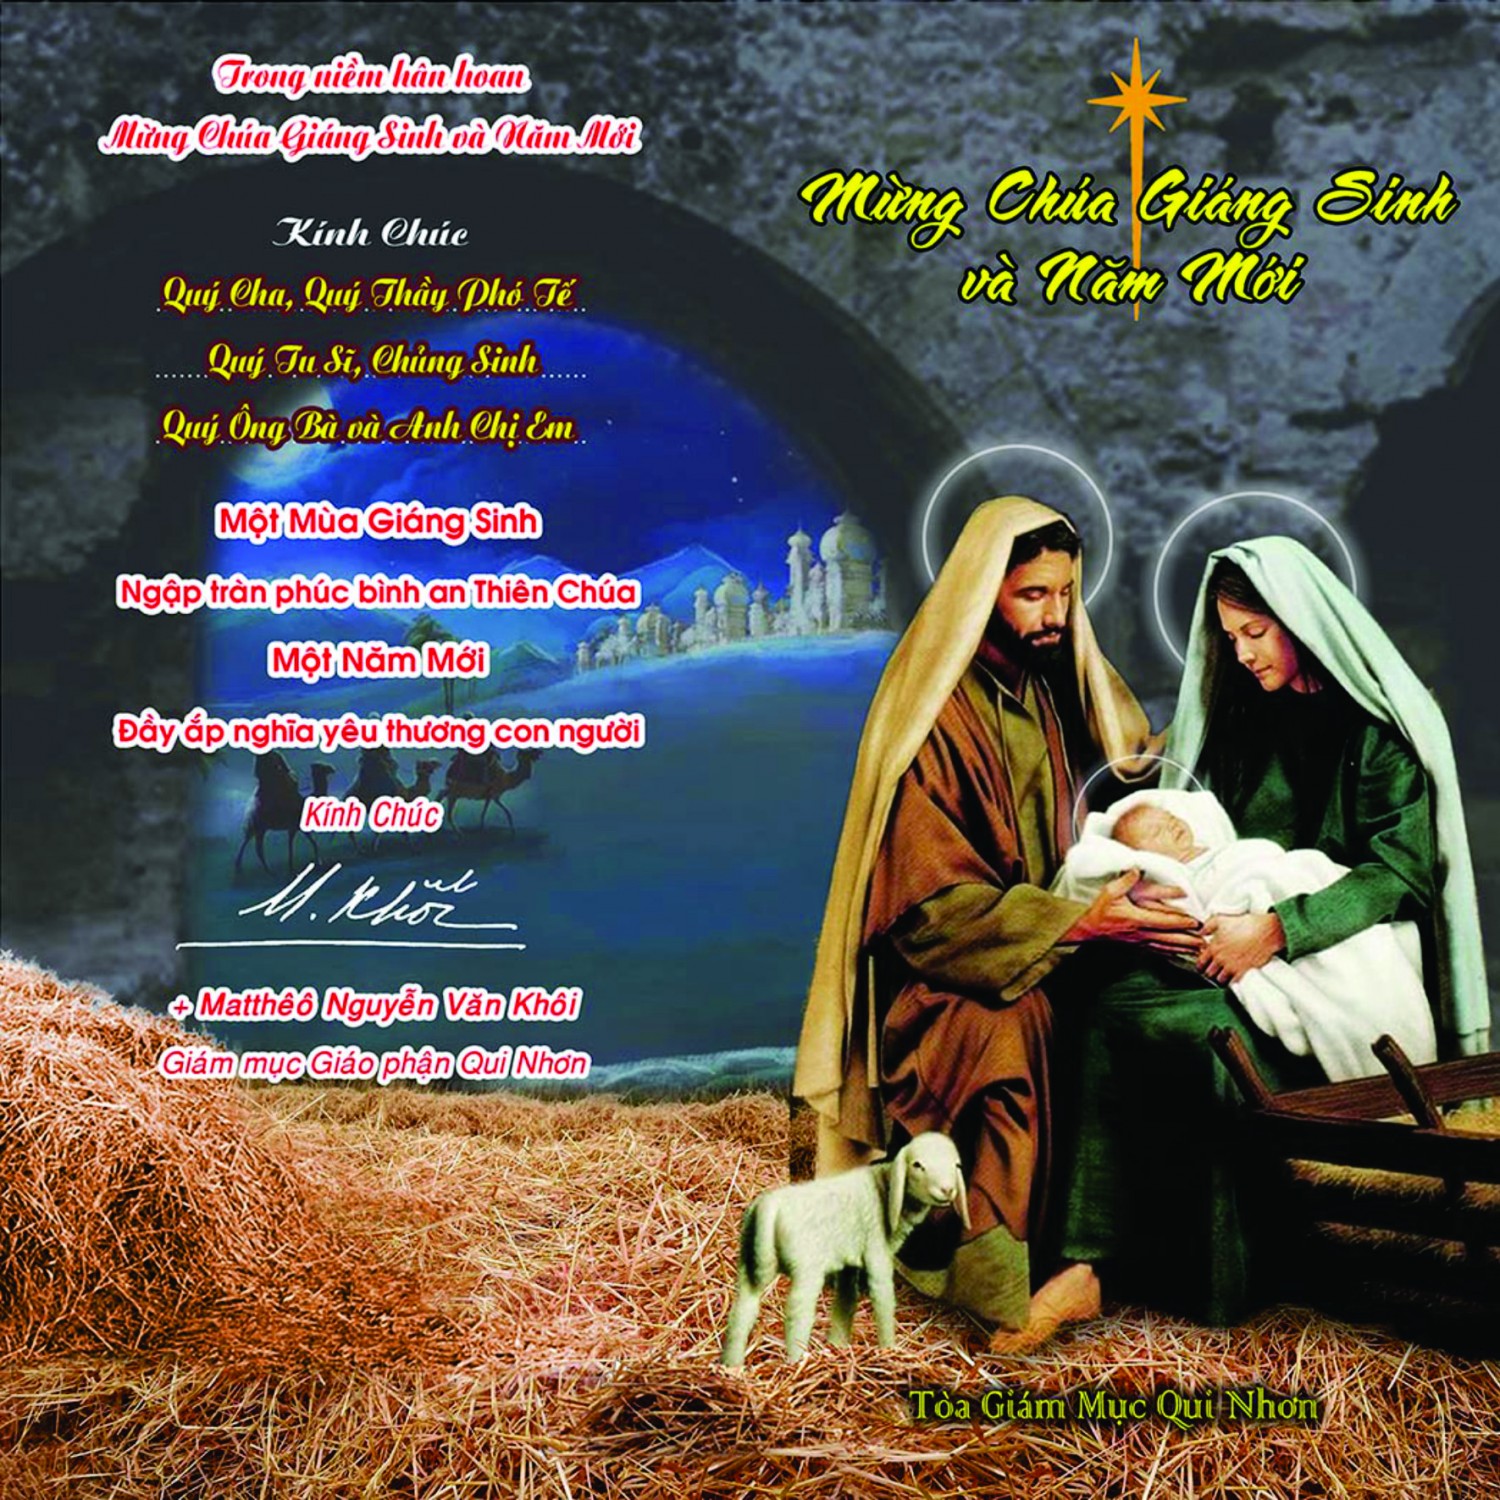 Thiệp mừng Giáng Sinh và Năm Mới của Đức Giám Mục